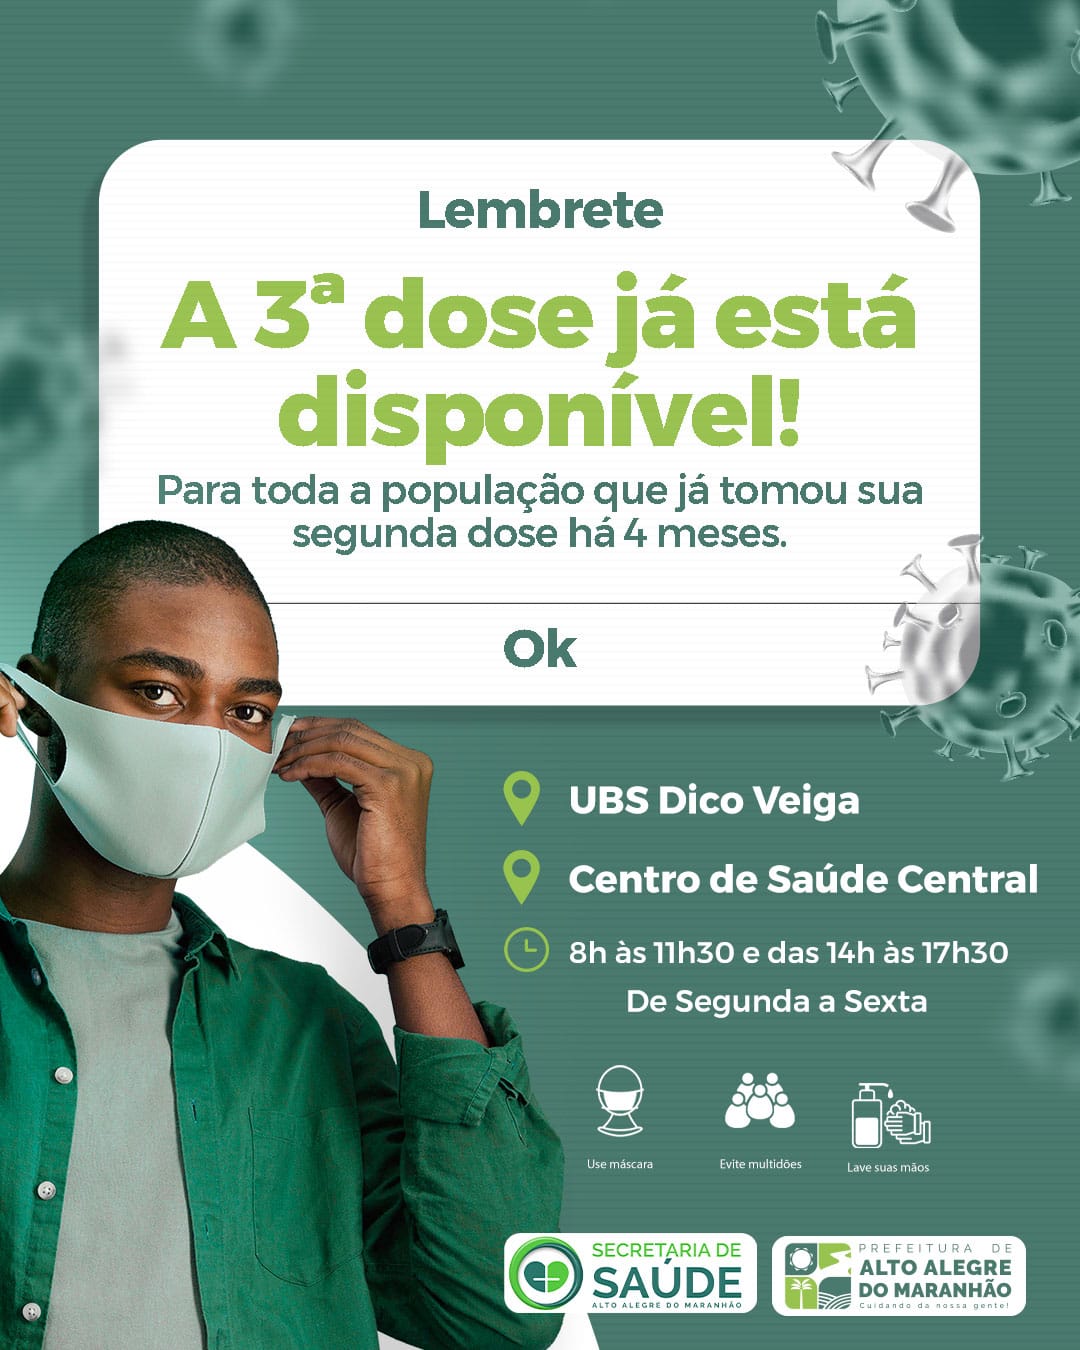 Reforço ! Procure as UBSs de Alto Alegre do Maranhão e tome a terceira dose, esse reforço da bem e protege.